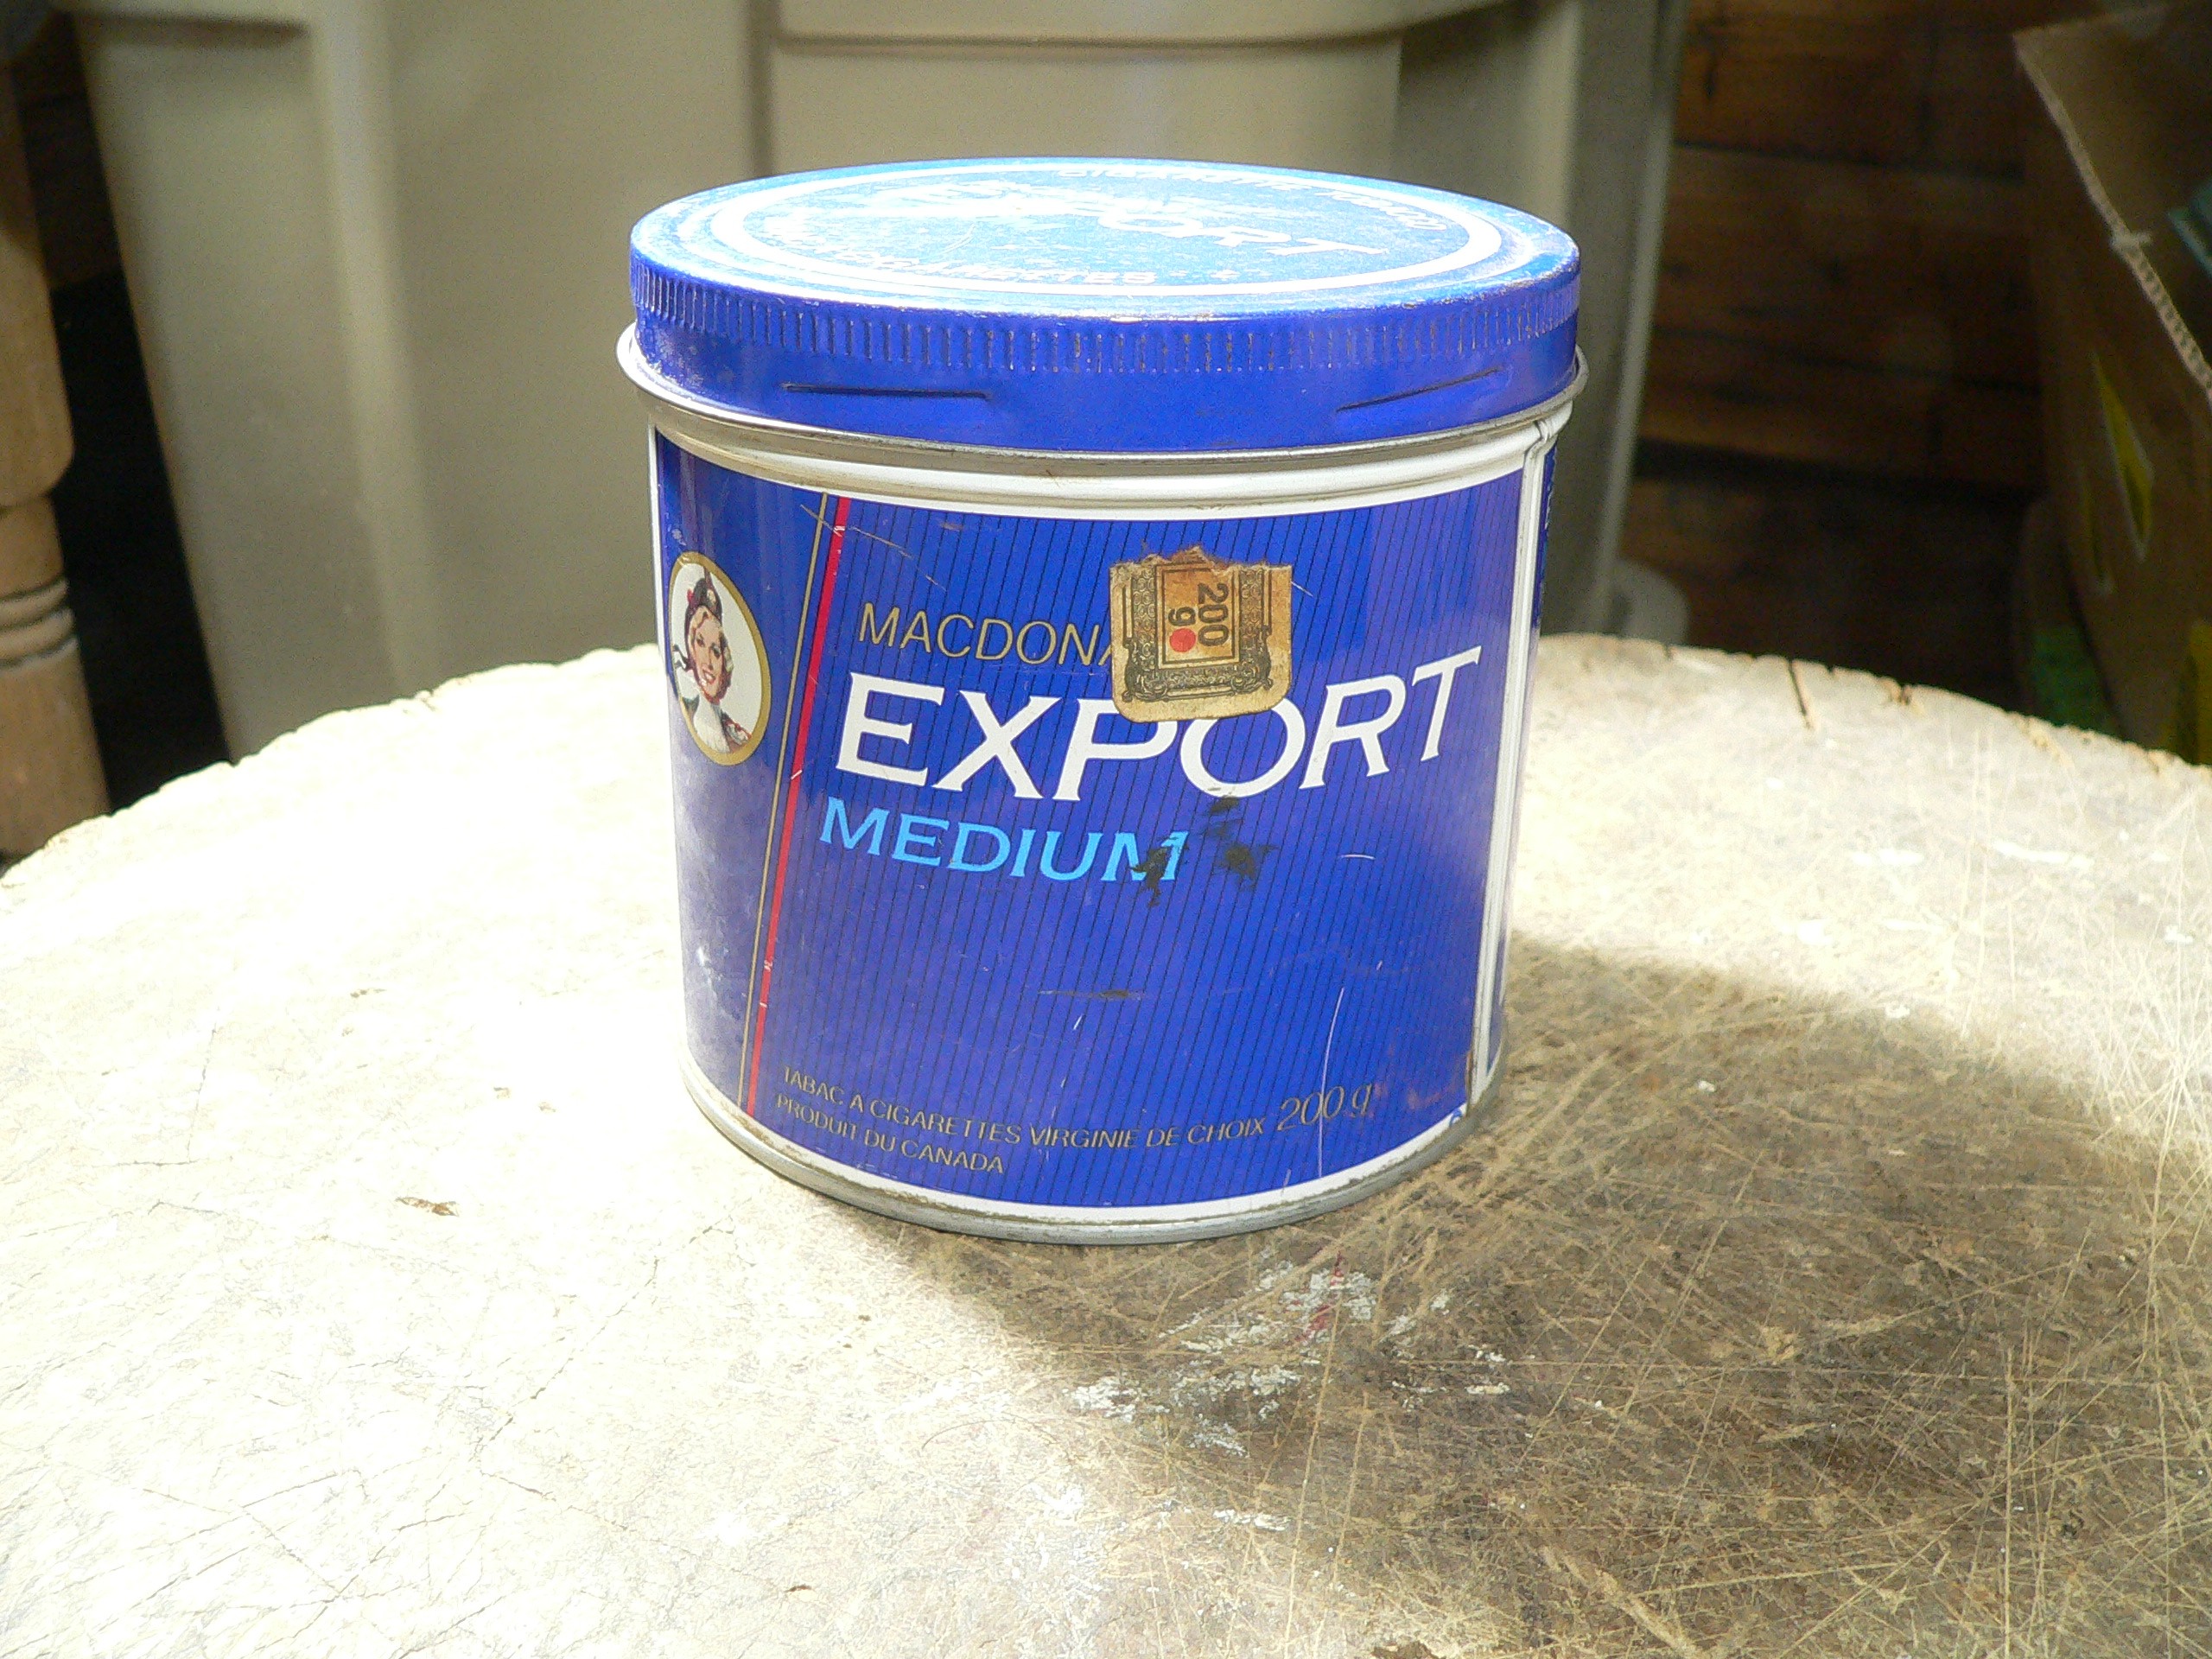 Canne export medium # 8917.8